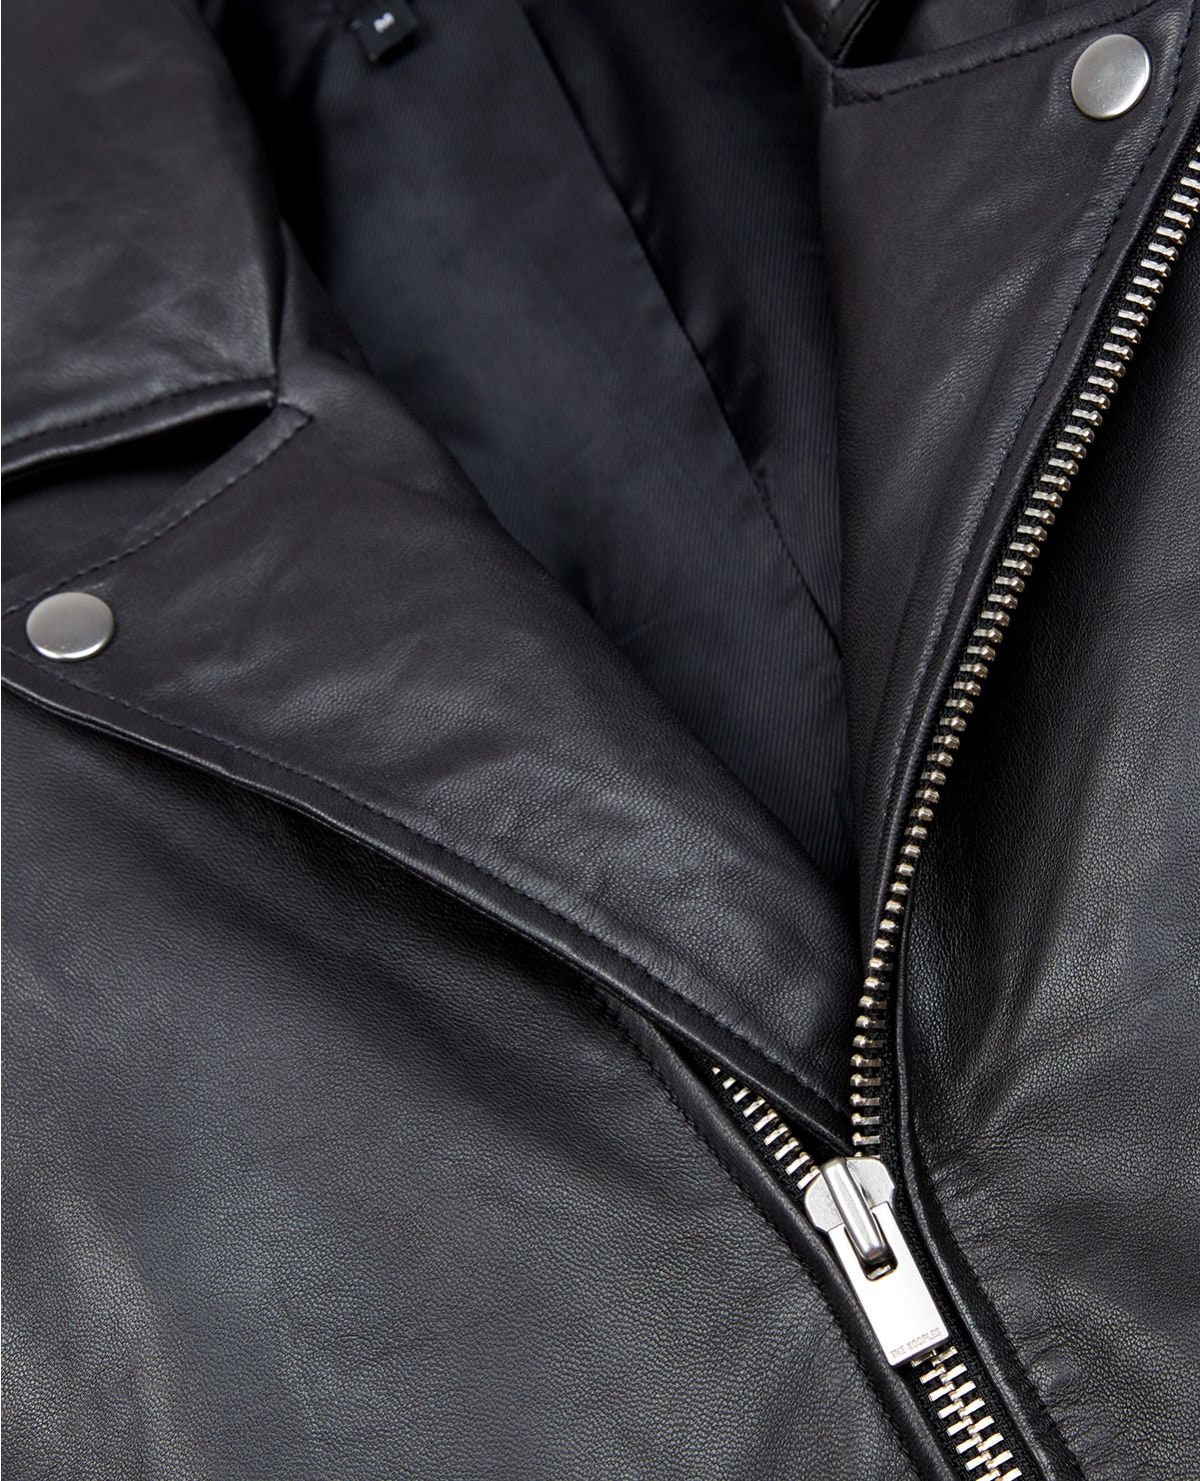 Black Zipper Leather Biker Jacket / Casual Jacket / Biker / | Etsy